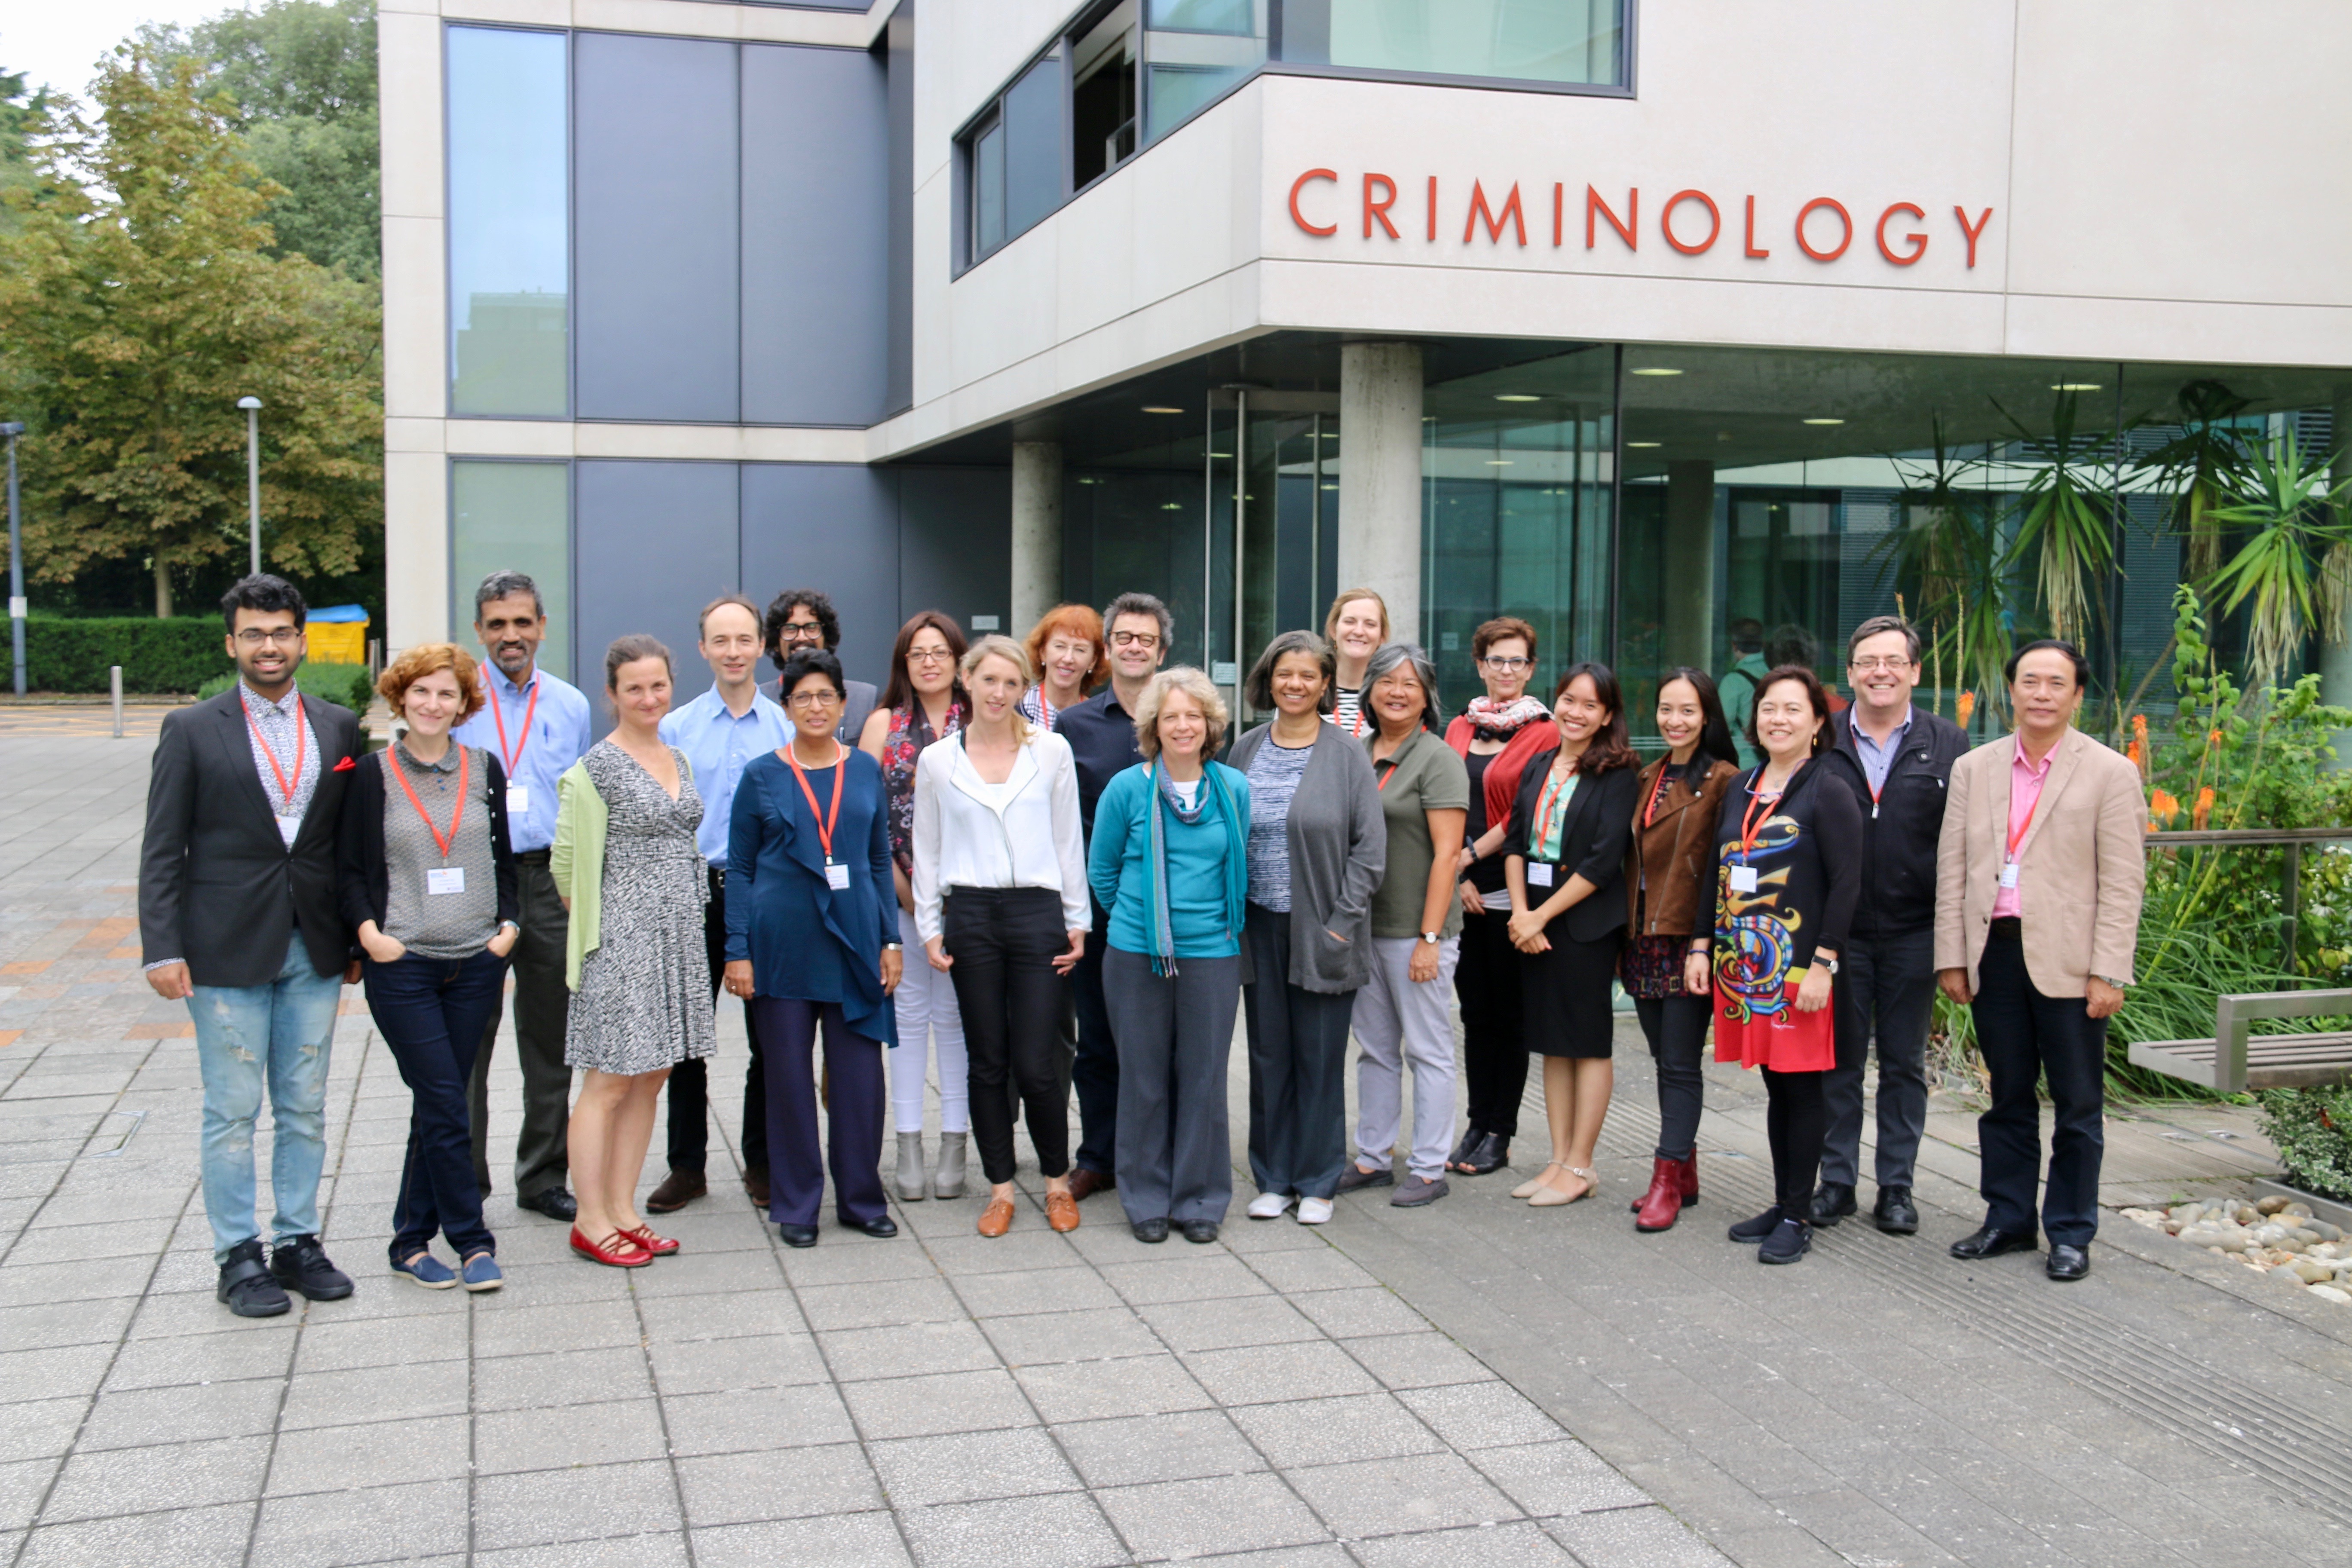 Đoàn đại biểu  Viện Nghiên cứu Sức khỏe Cộng đồng - Trường Đại Học Y Dược Huế tham dự hội nghị "Bằng Chứng Cho Cuộc Sống Tốt Đẹp Hơn" tại Cambridge, Vương Quốc Anh